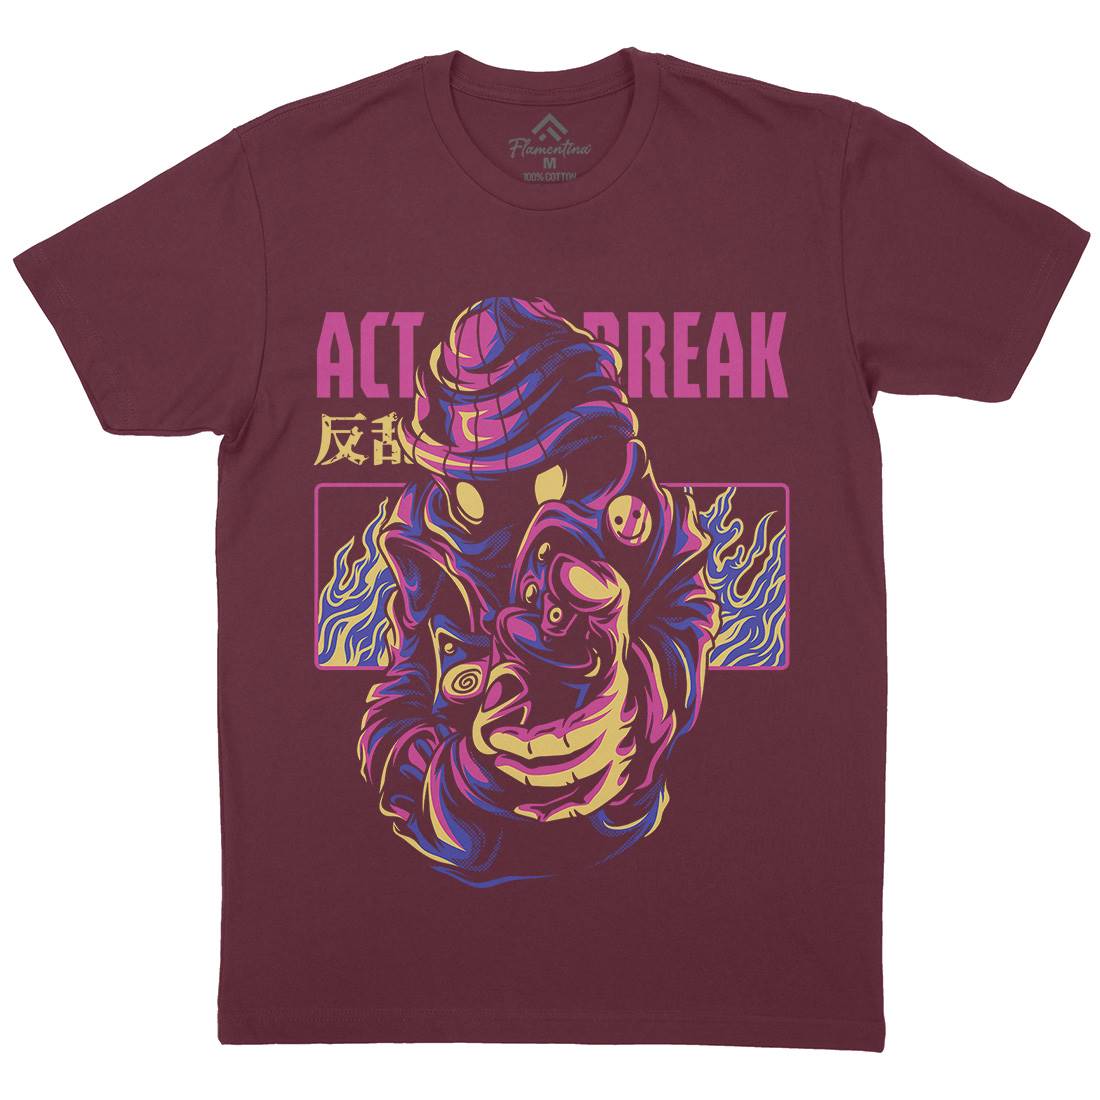 Act Break Mens Crew Neck T-Shirt Graffiti D700